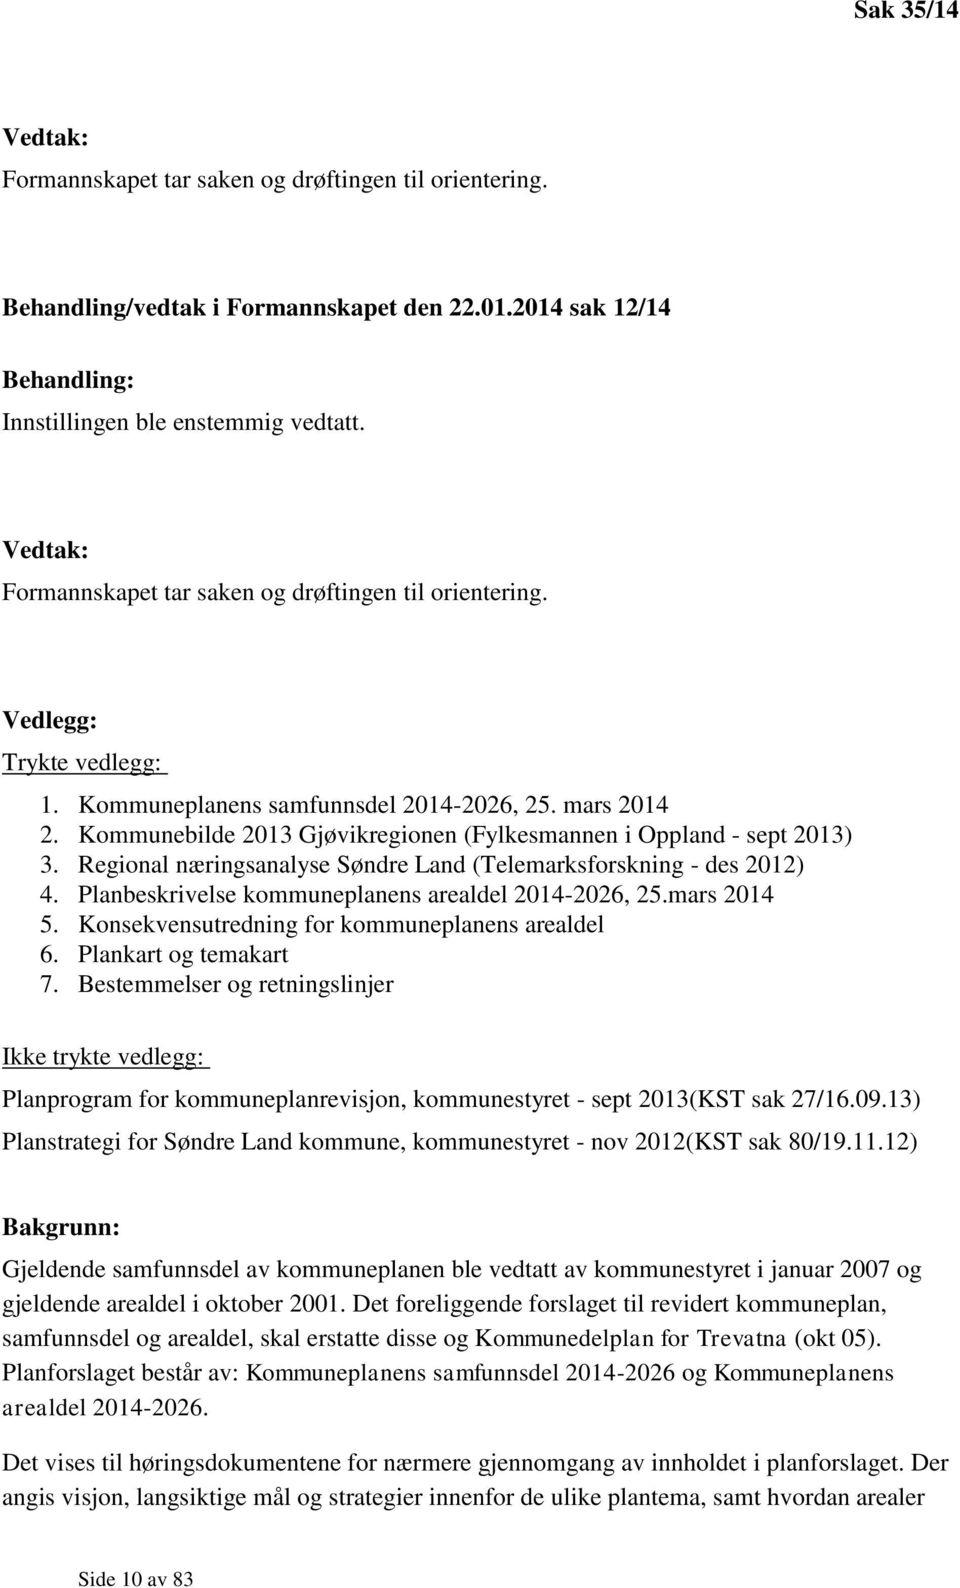 Kommunebilde 2013 Gjøvikregionen (Fylkesmannen i Oppland - sept 2013) 3. Regional næringsanalyse Søndre Land (Telemarksforskning - des 2012) 4. Planbeskrivelse kommuneplanens arealdel 2014-2026, 25.